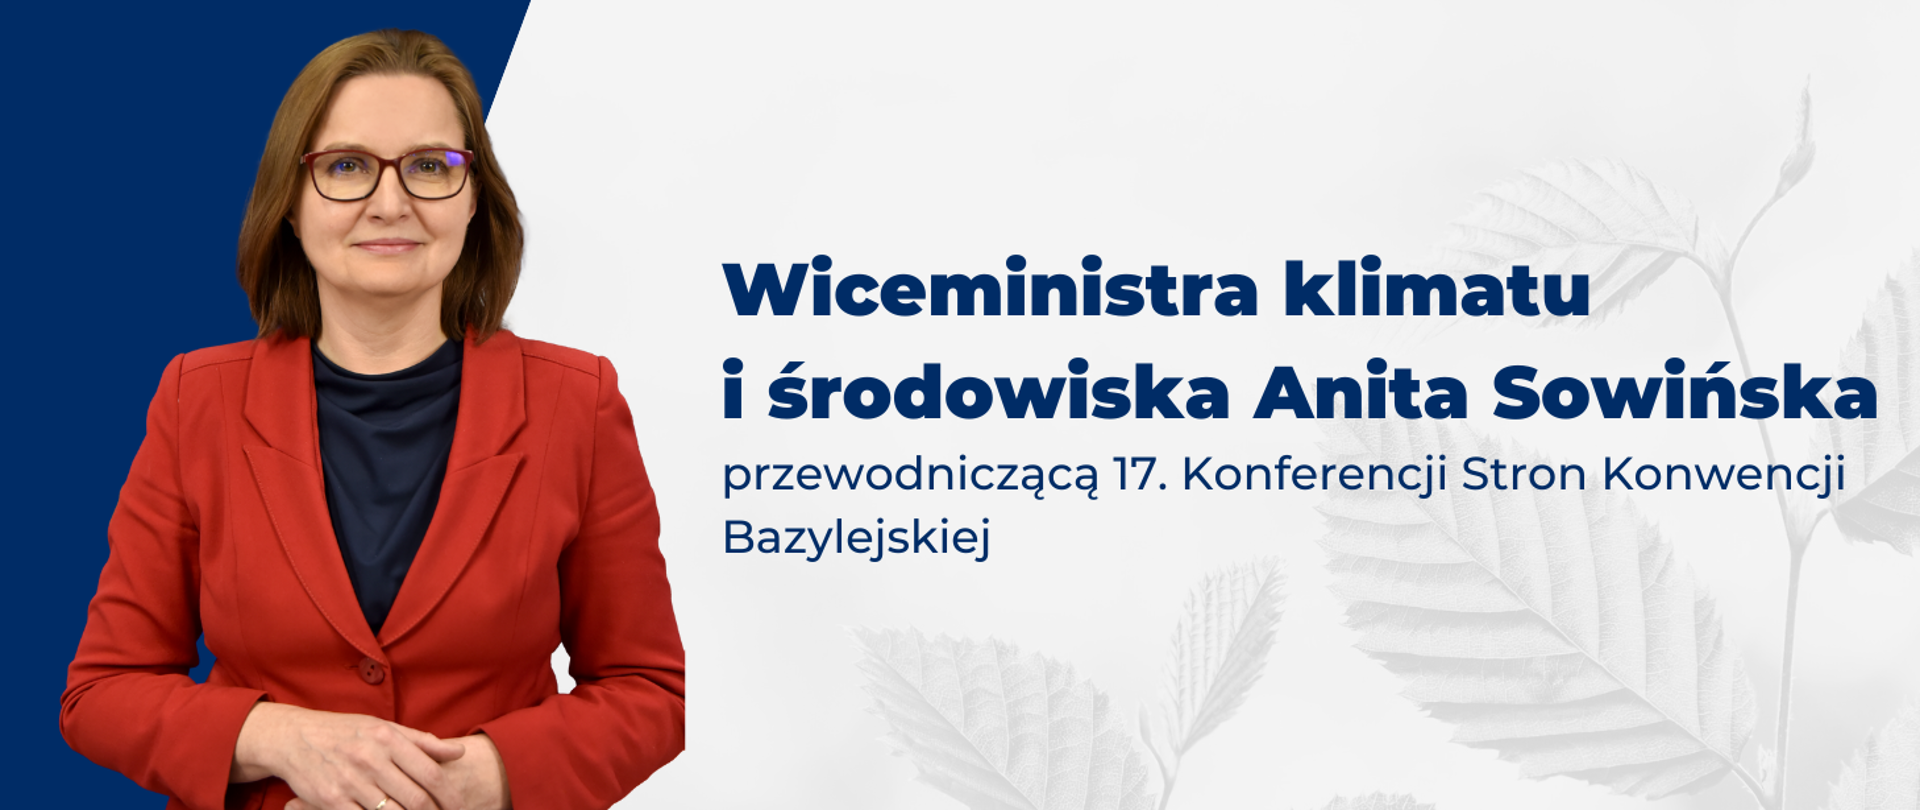 Wiceministra Anita Sowińska Przewodniczącą 17. Konferencji Stron Konwencji Bazylejskiej